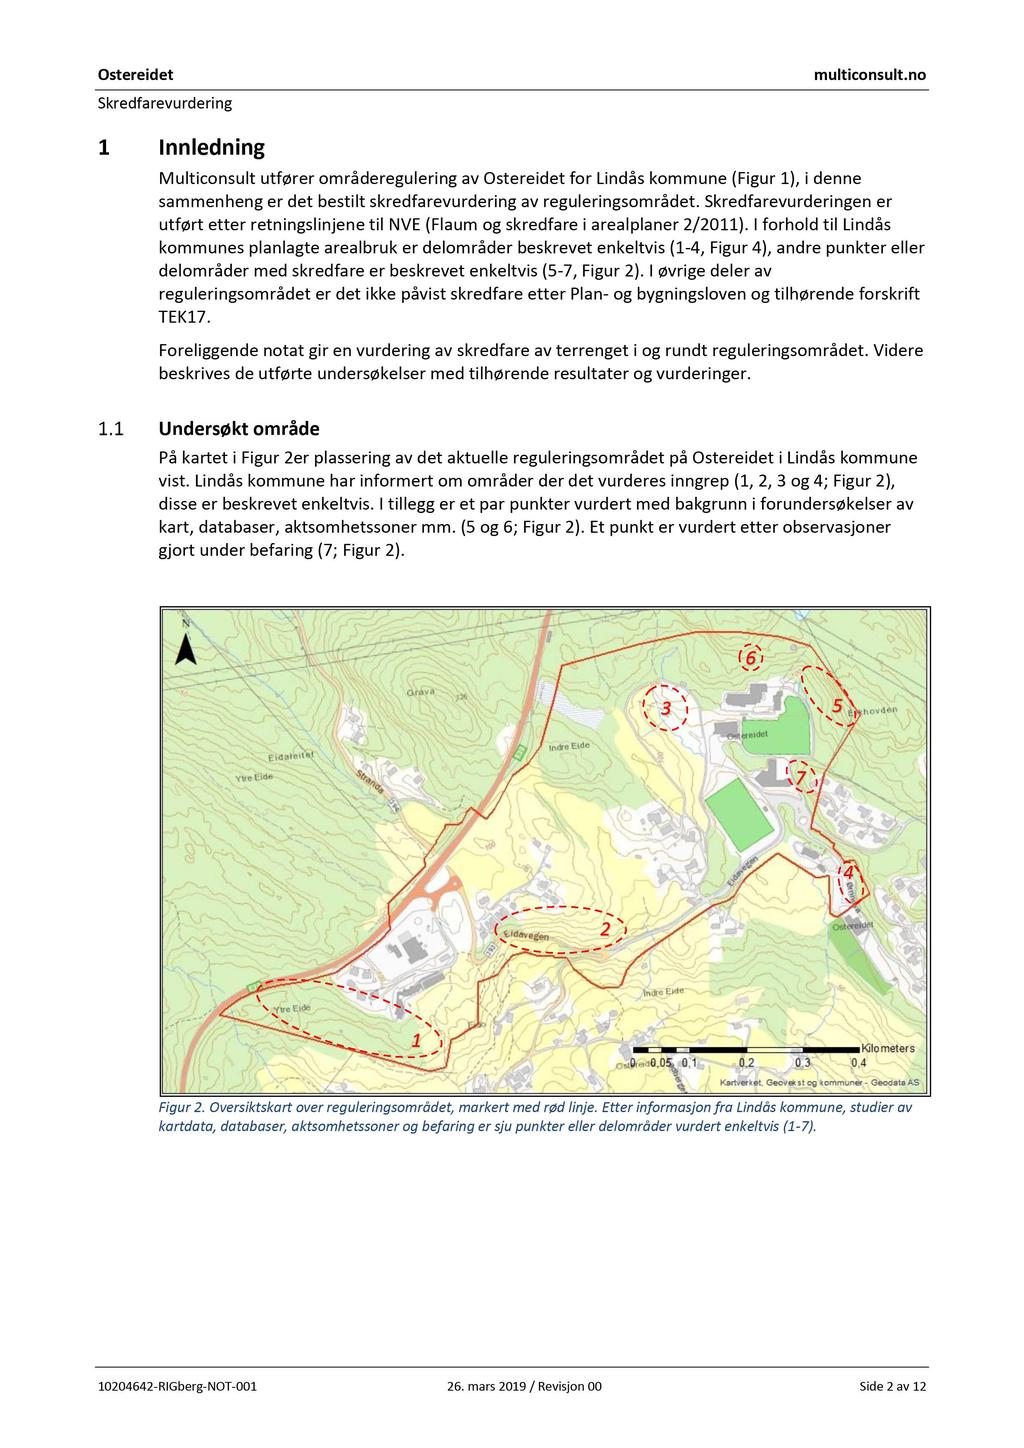 1 Innledning Multiconsult utfører områderegulering av for Lindås kommune (Figur 1), i denne sammenheng er det bestilt skredfarevurdering av reguleringsområdet.